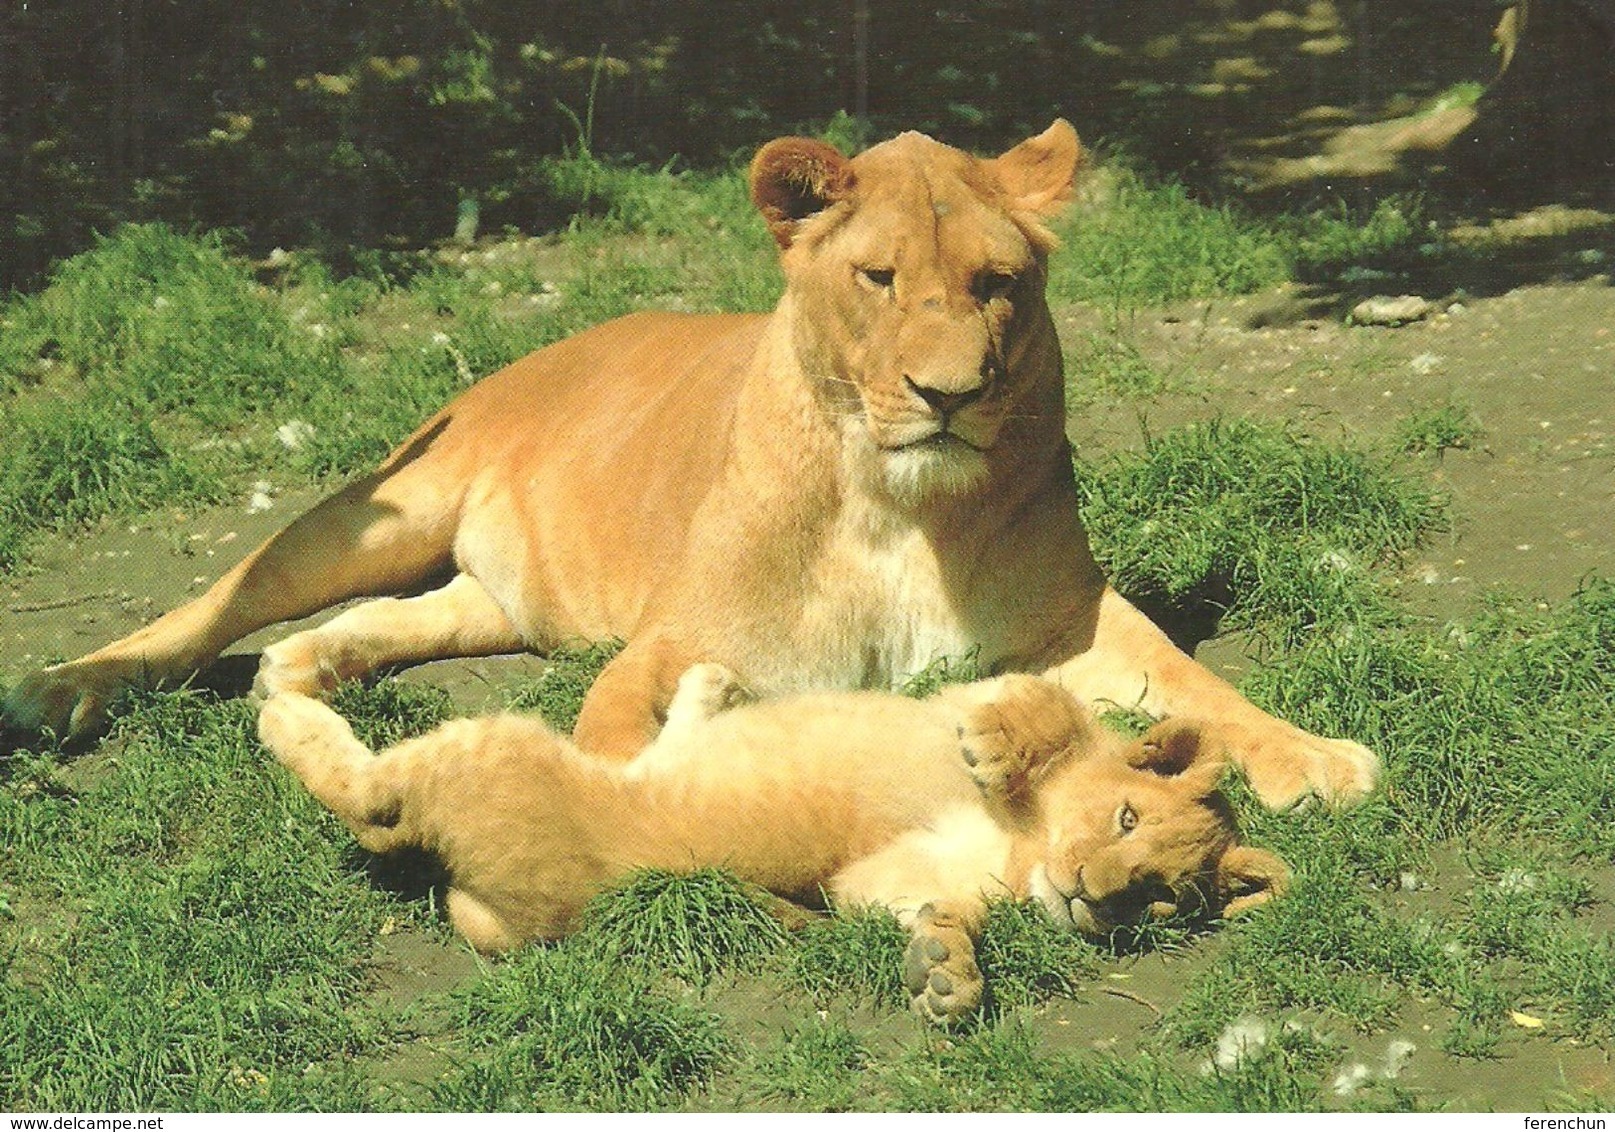 LION * BABY LION * ELEPHANT * ANIMAL * ZOO & BOTANICAL GARDEN * Budapest Zoo 11 04 * Hungary - Lions